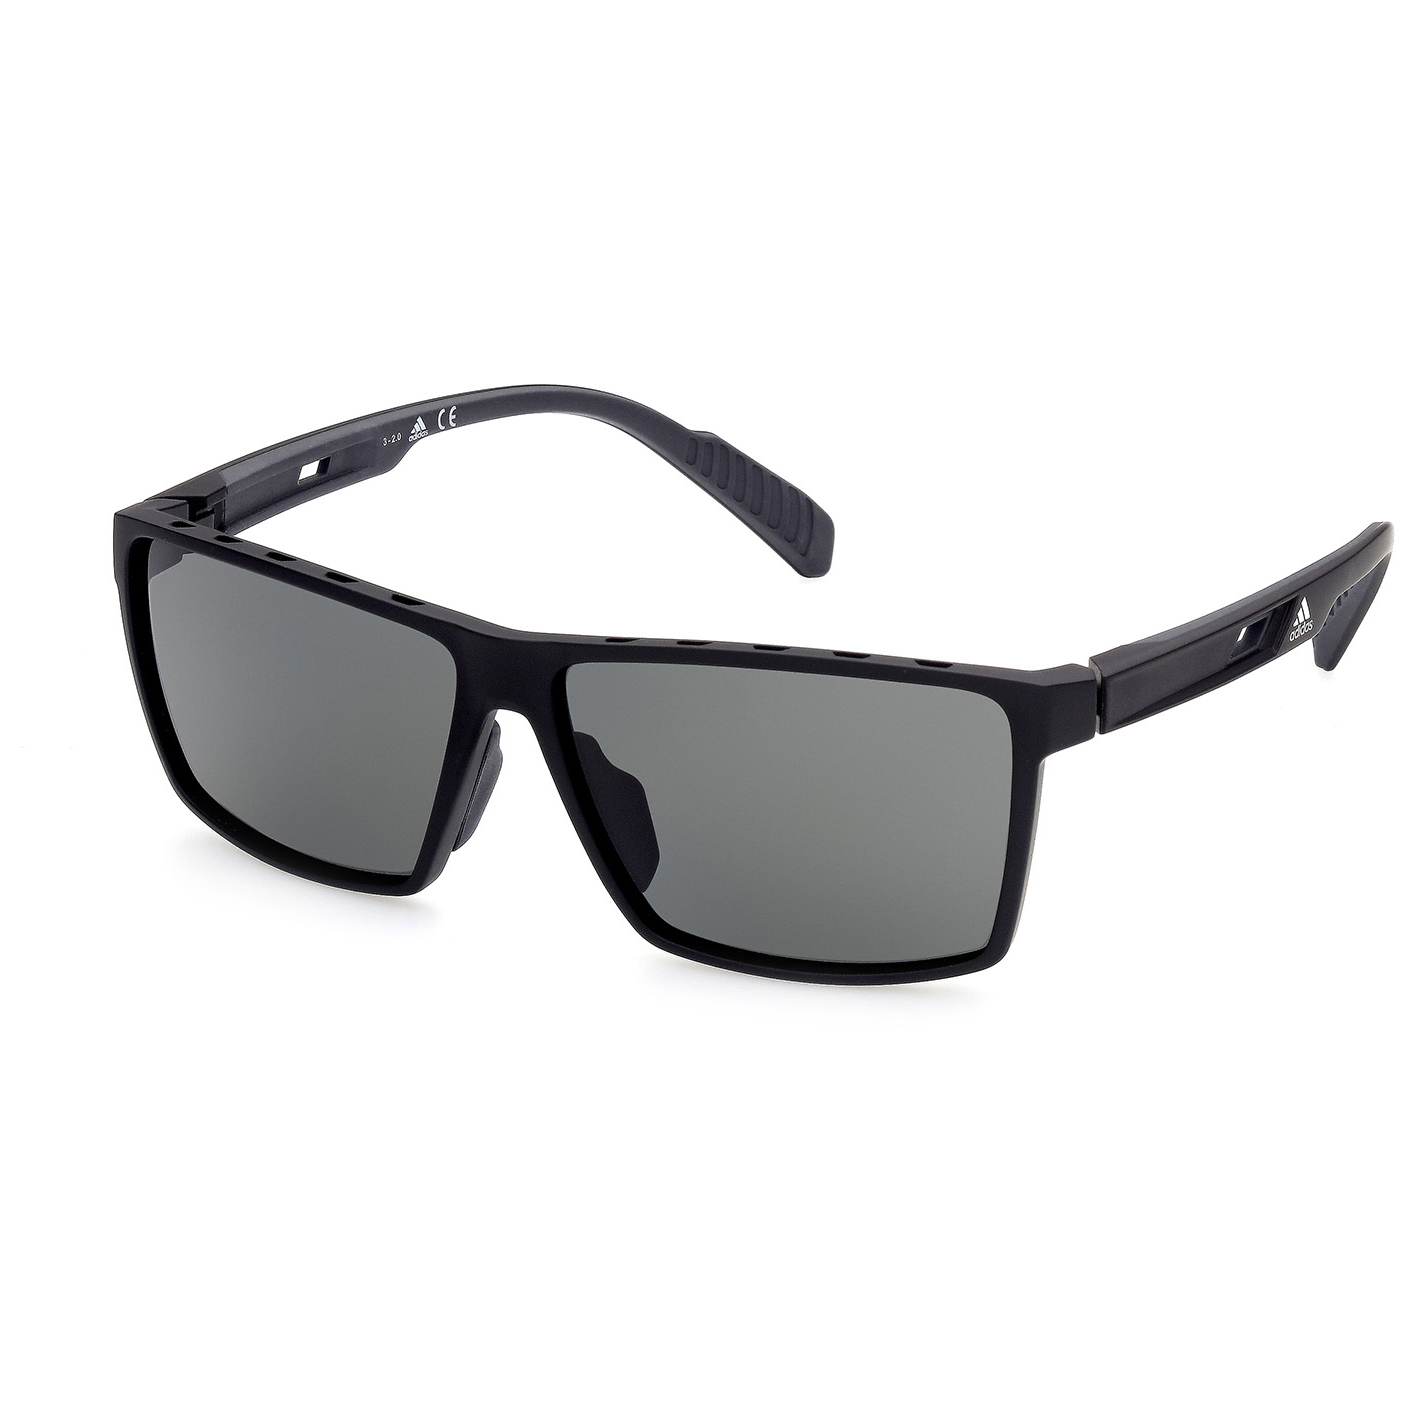 Солнцезащитные очки Adidas SP0034 Polarized Cat 3, матовый черный очки солнцезащитные stylemark polarized l2438f photochrome хамелеон